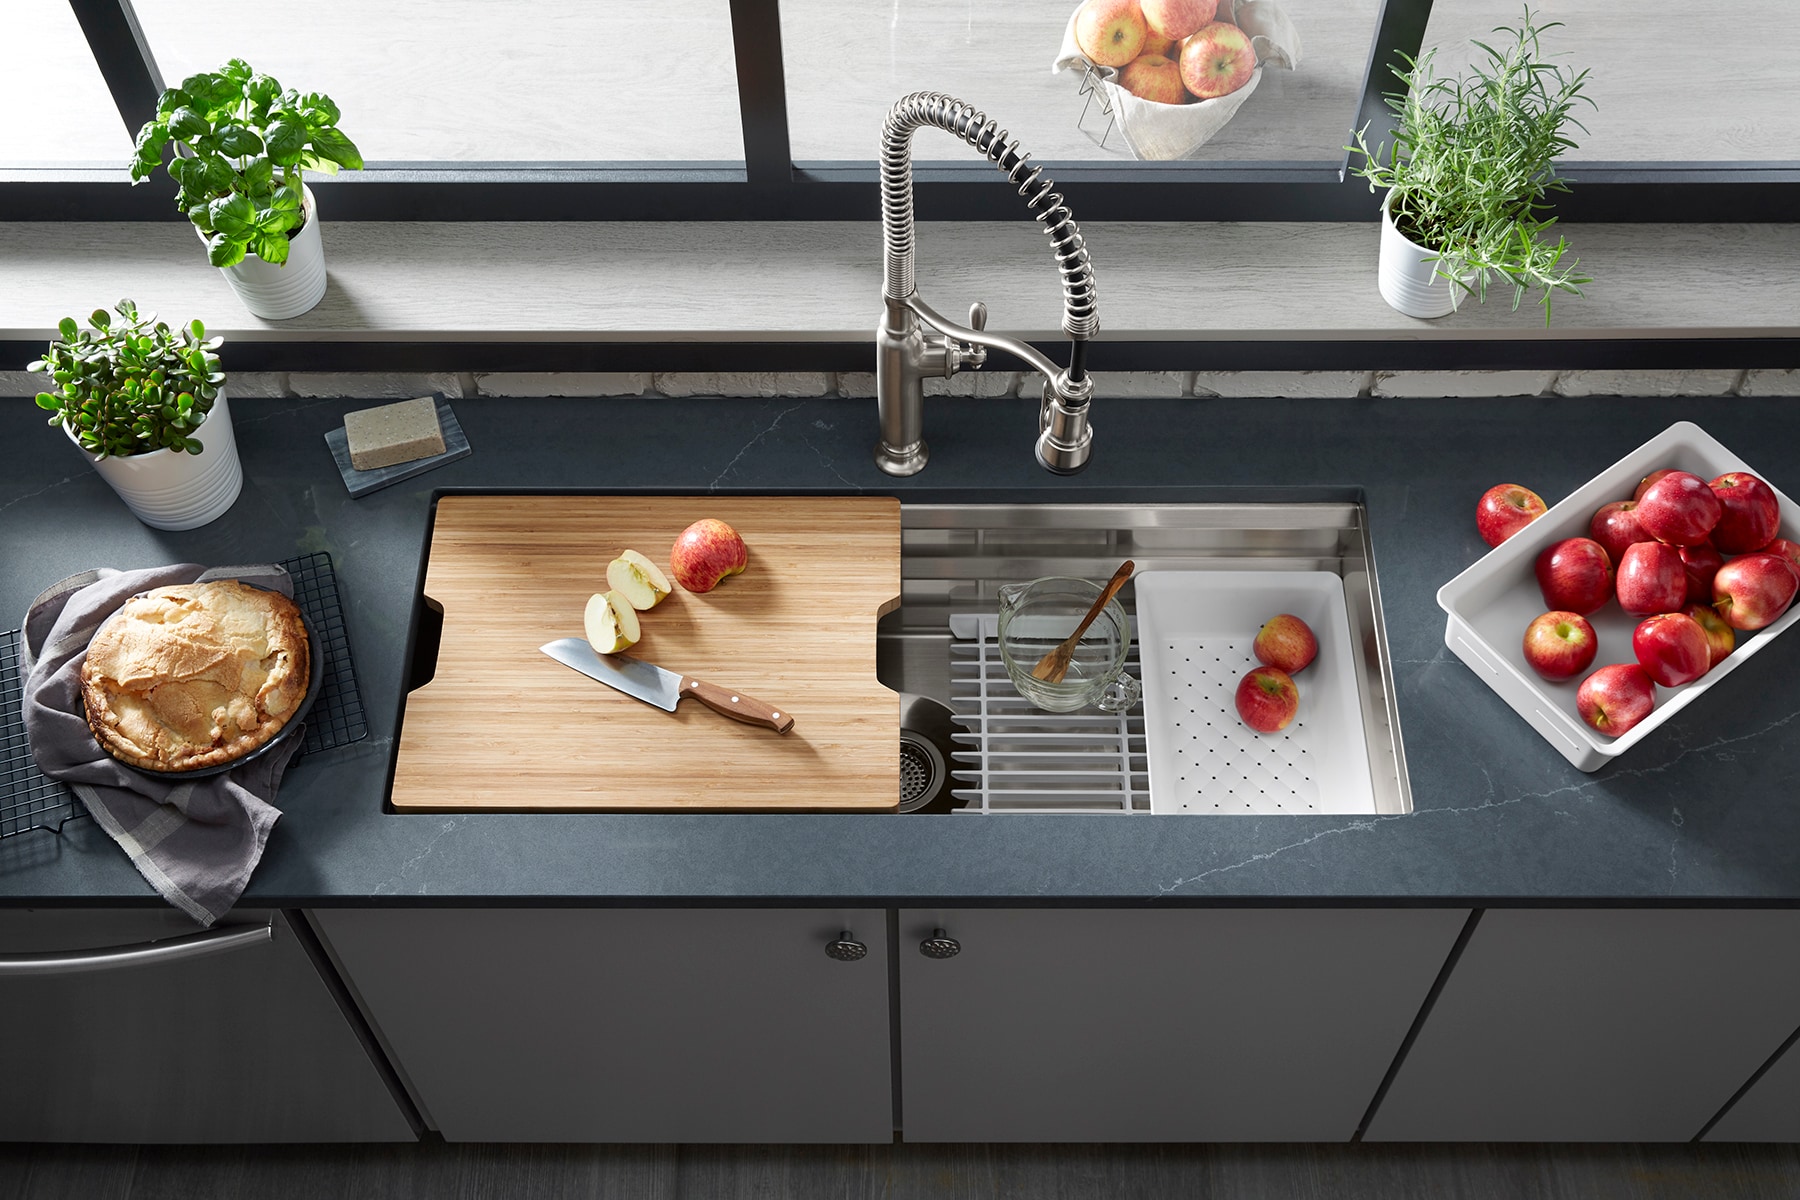 5 handy kitchen sink accessories for your kitchen